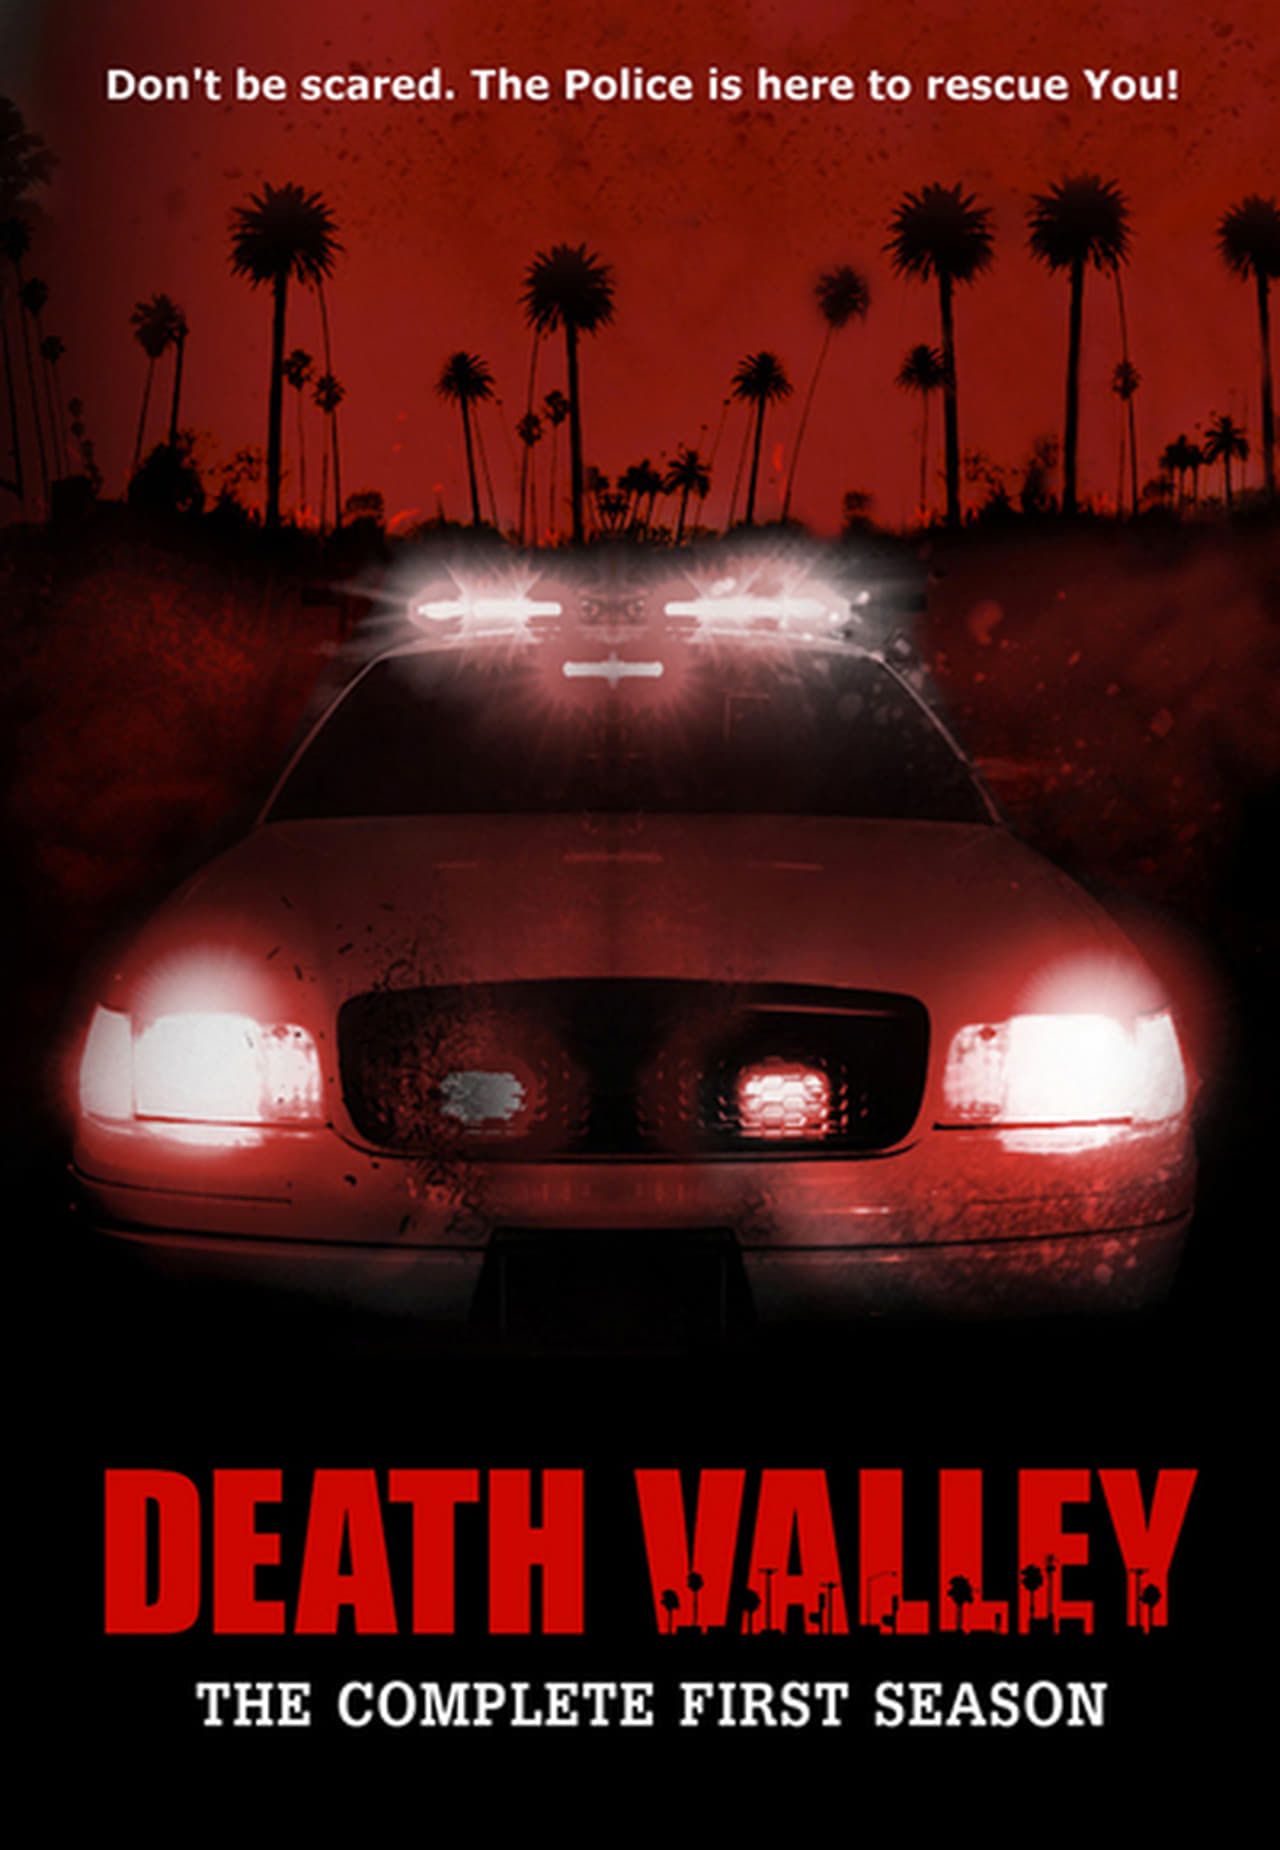 Death Valley Season 1